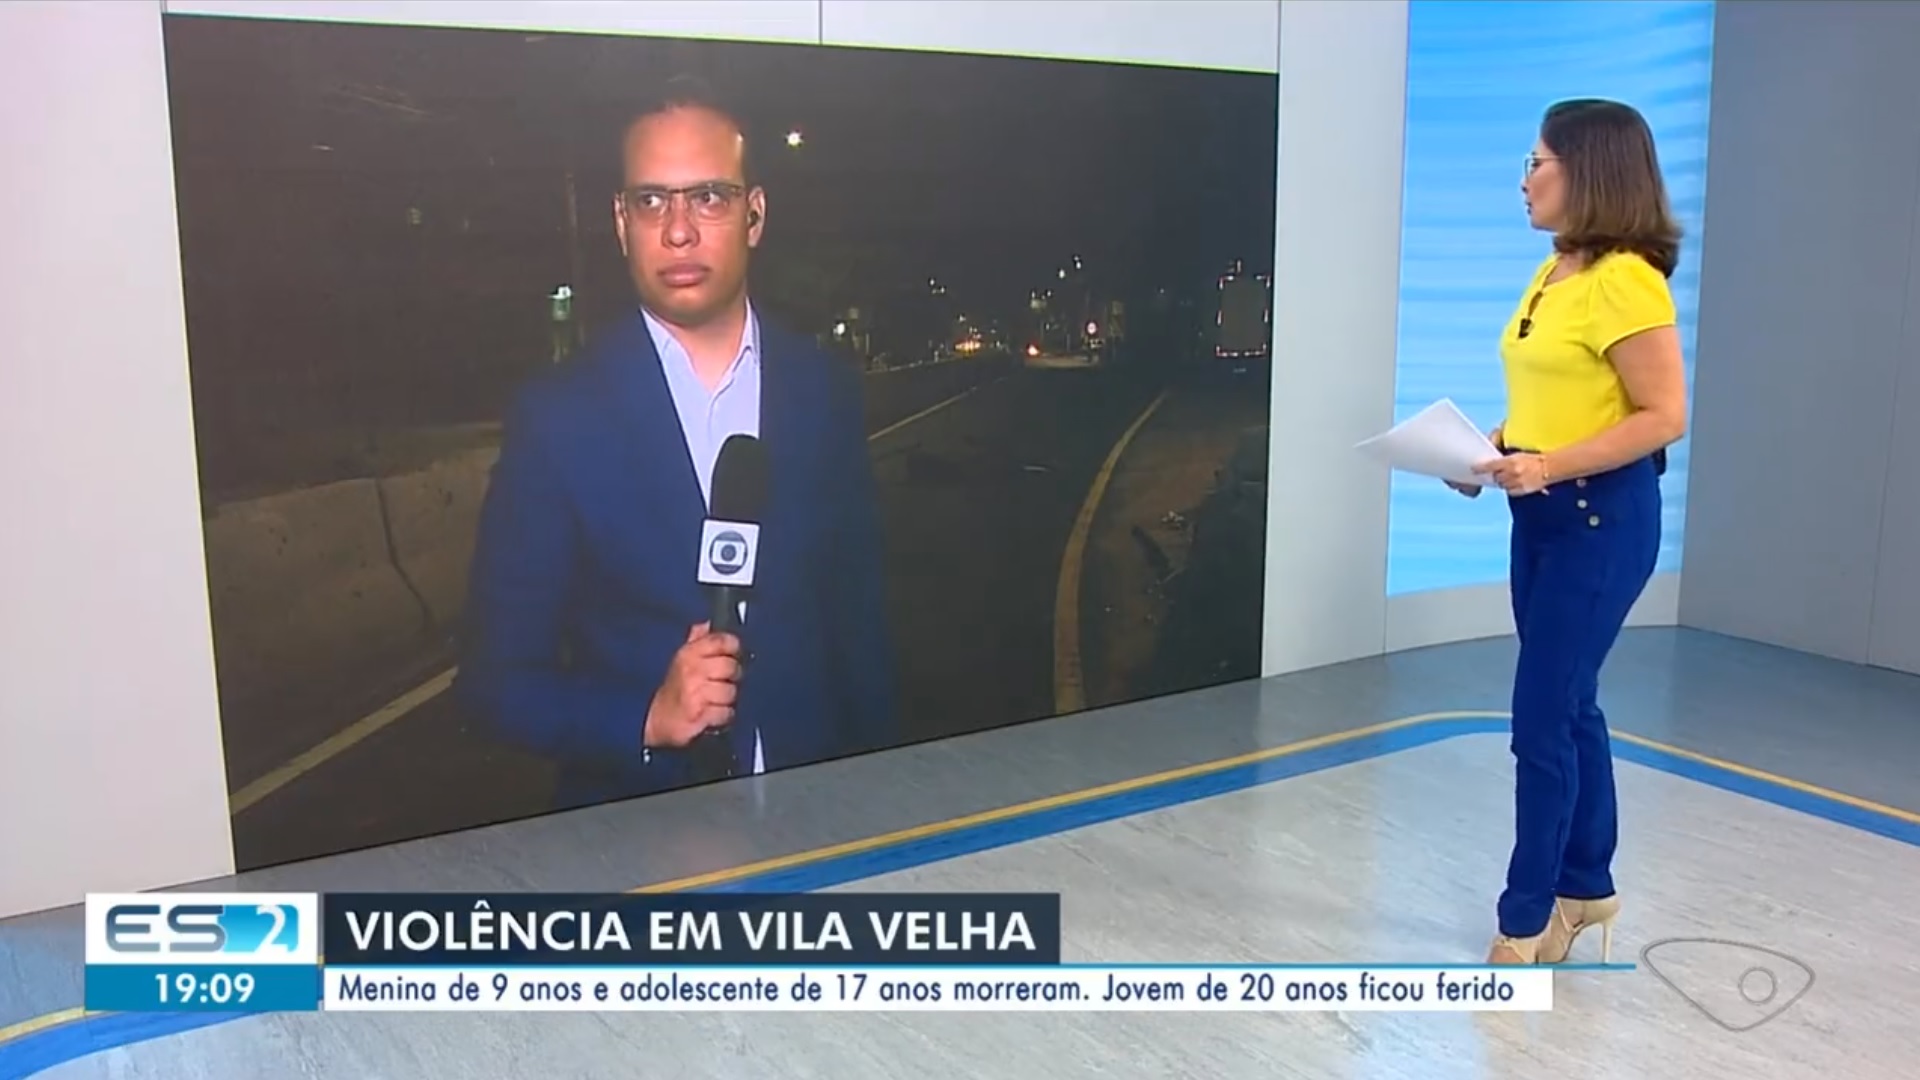 Exclusivo: Jornalista da Globo é ameaçado ao vivo em telejornal; canal se pronuncia